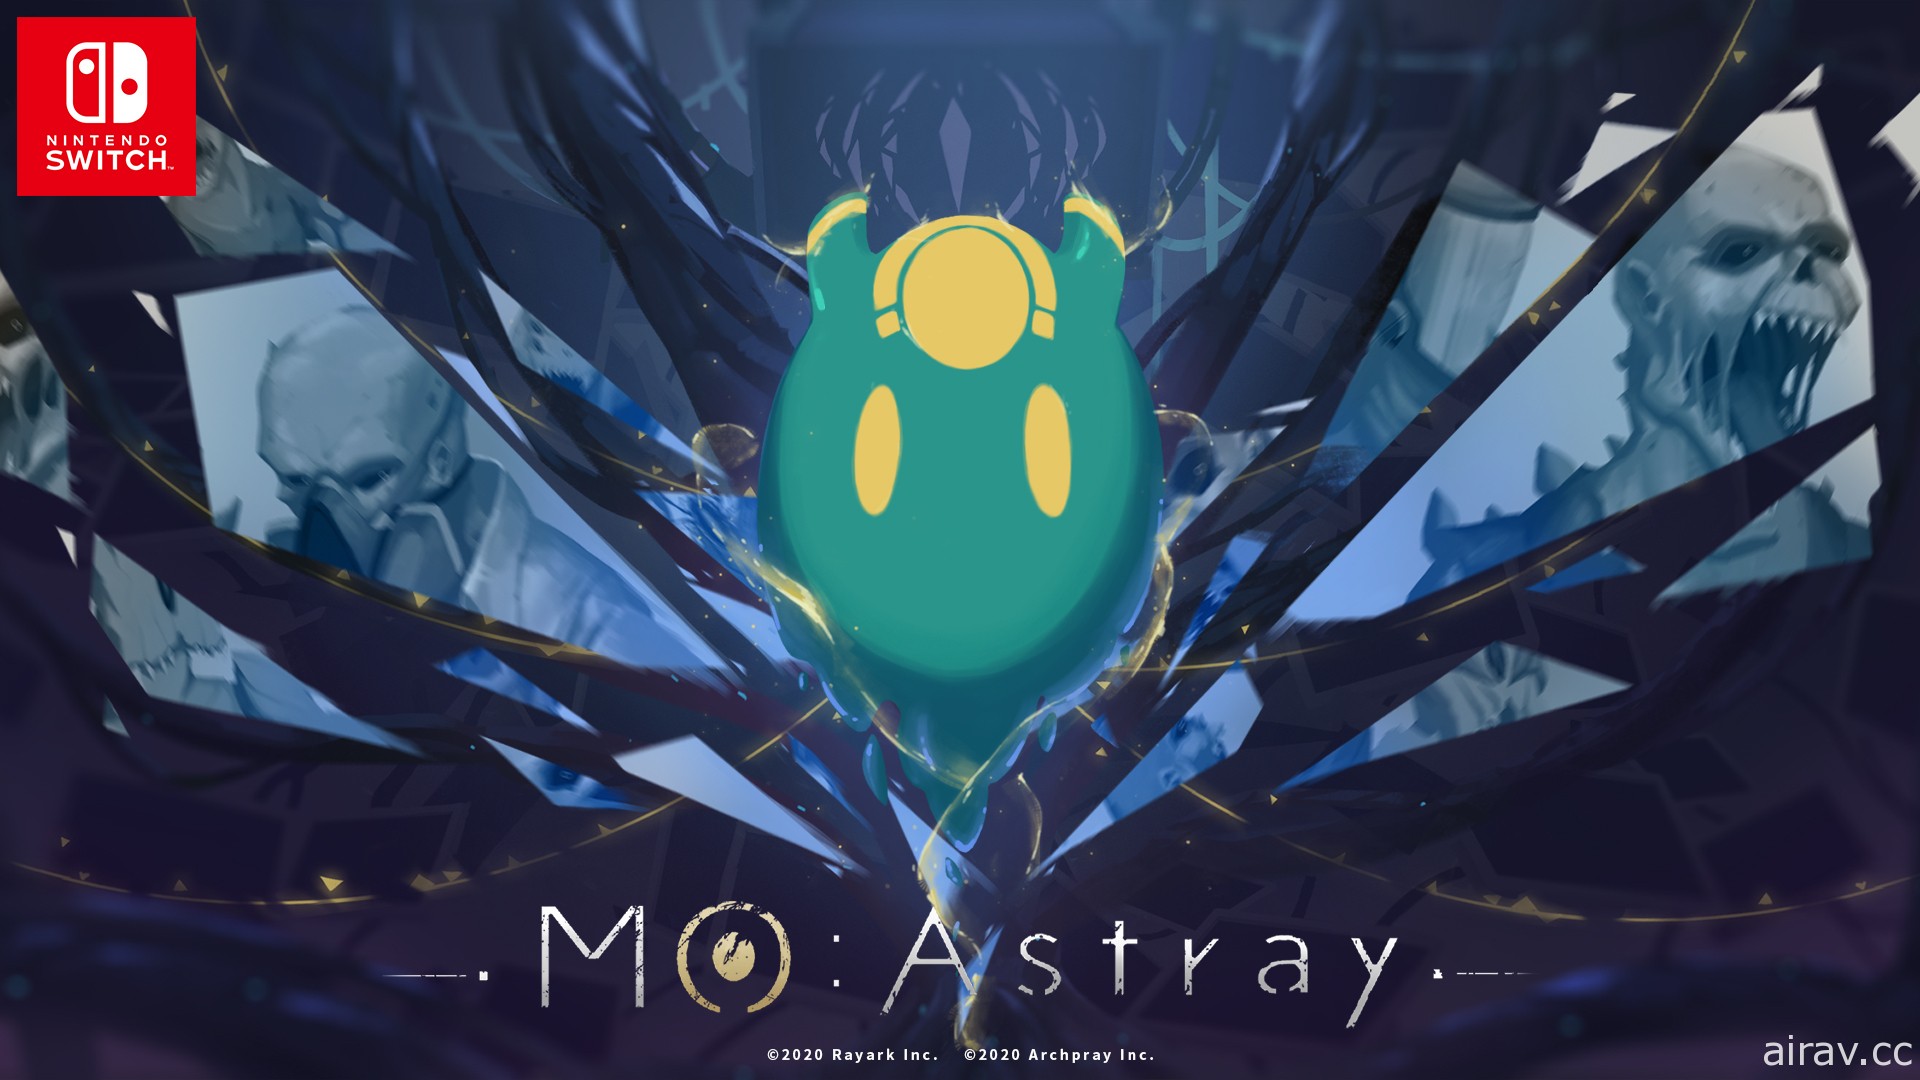 橫向動作解謎遊戲《MO : Astray 細胞迷途》將於 9 月 10 日推出 NS 主機版